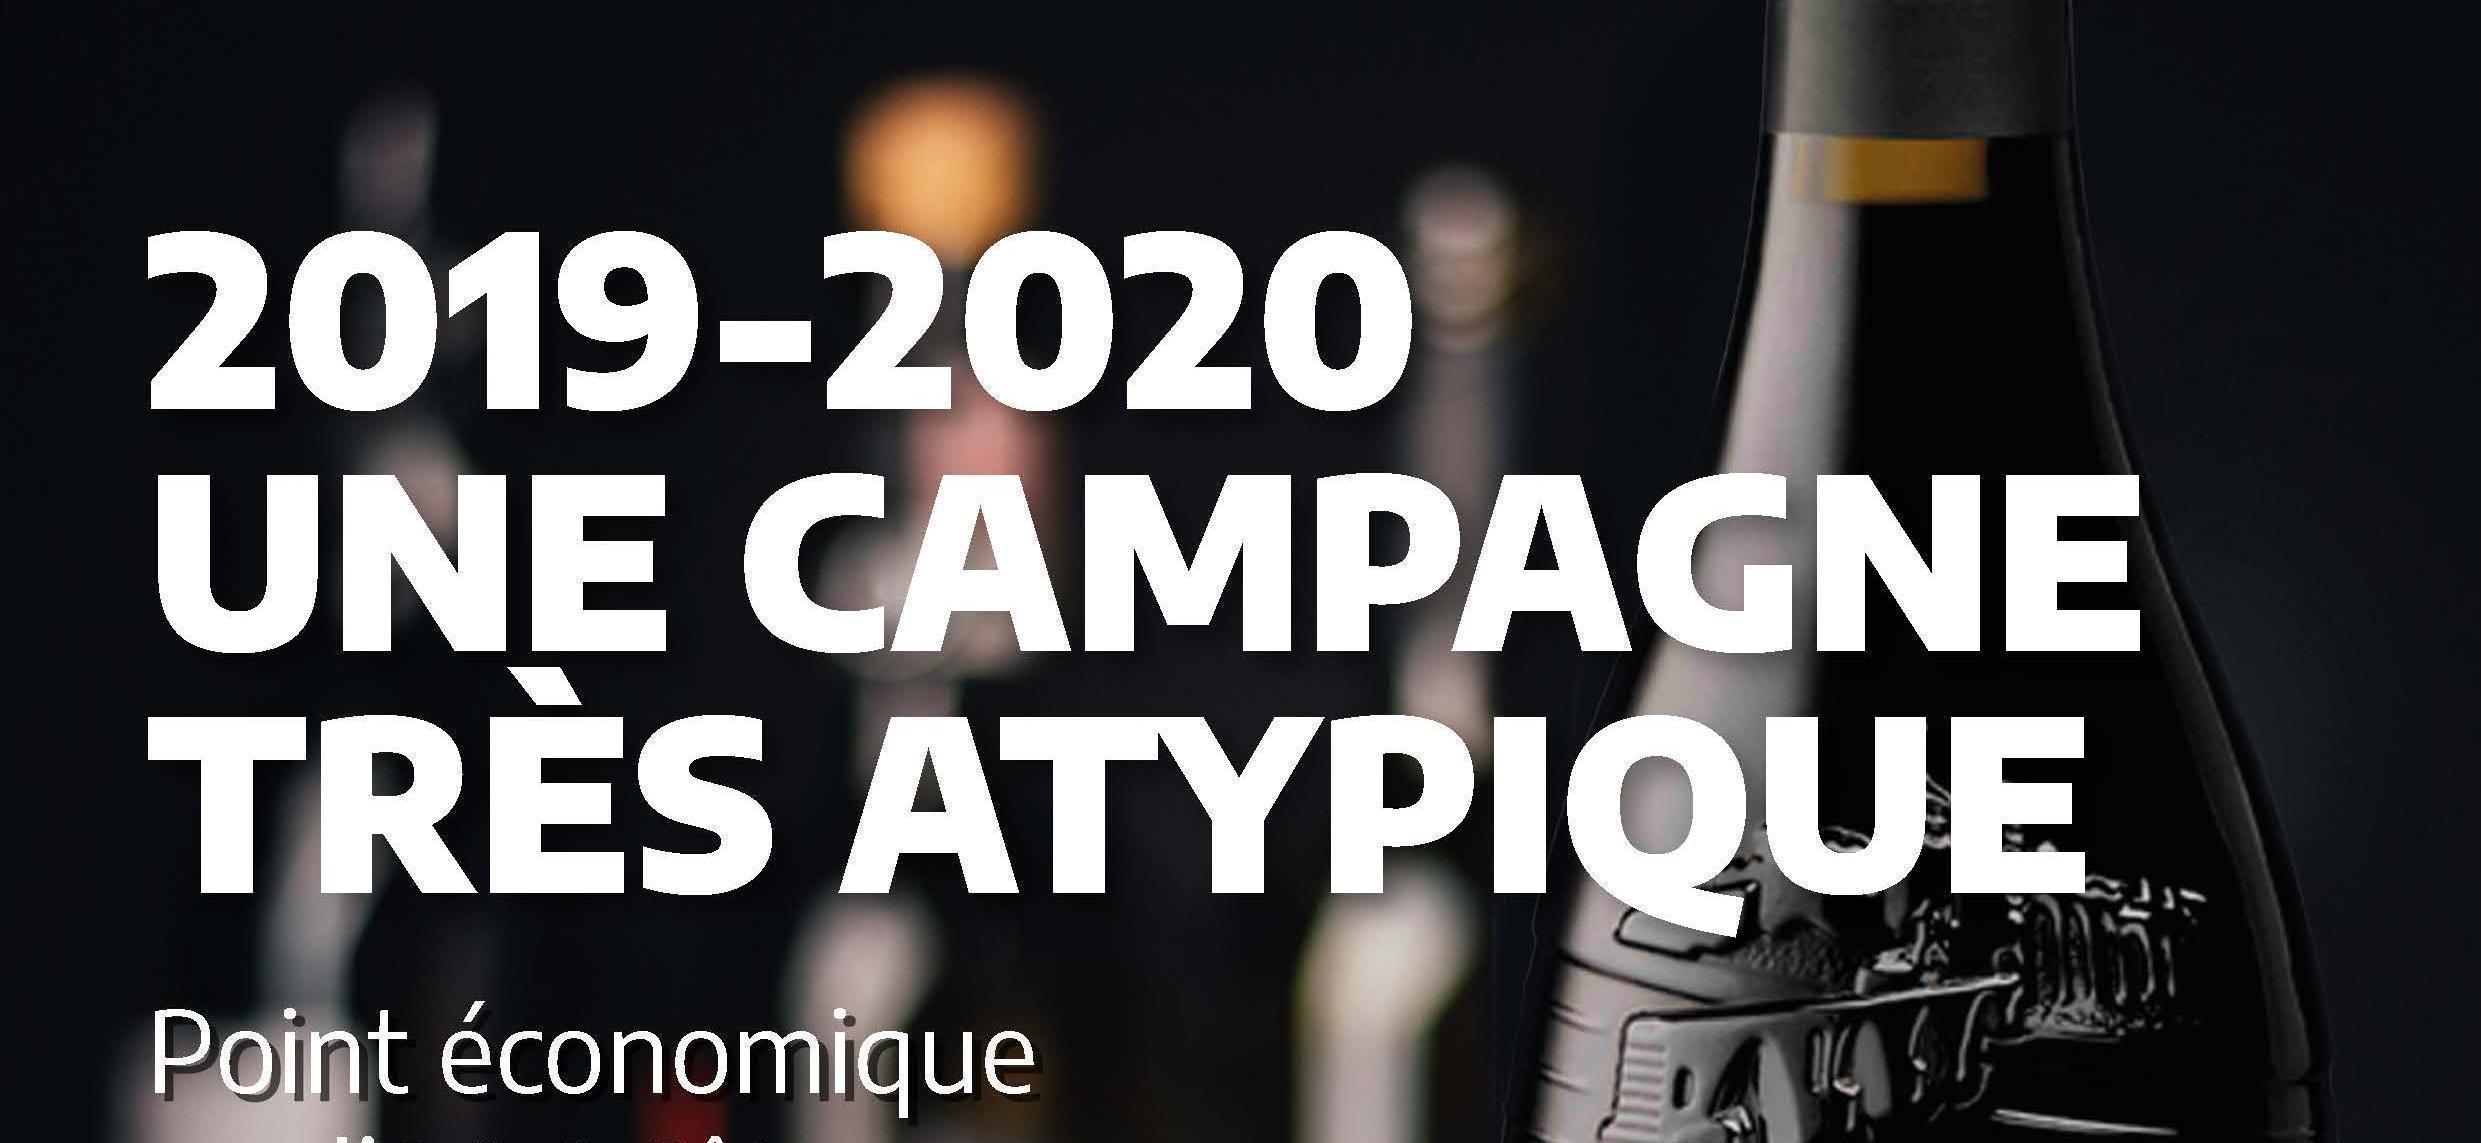 Le Vigneron d’octobre 2020 : Bilan de la campagne 2019/2020